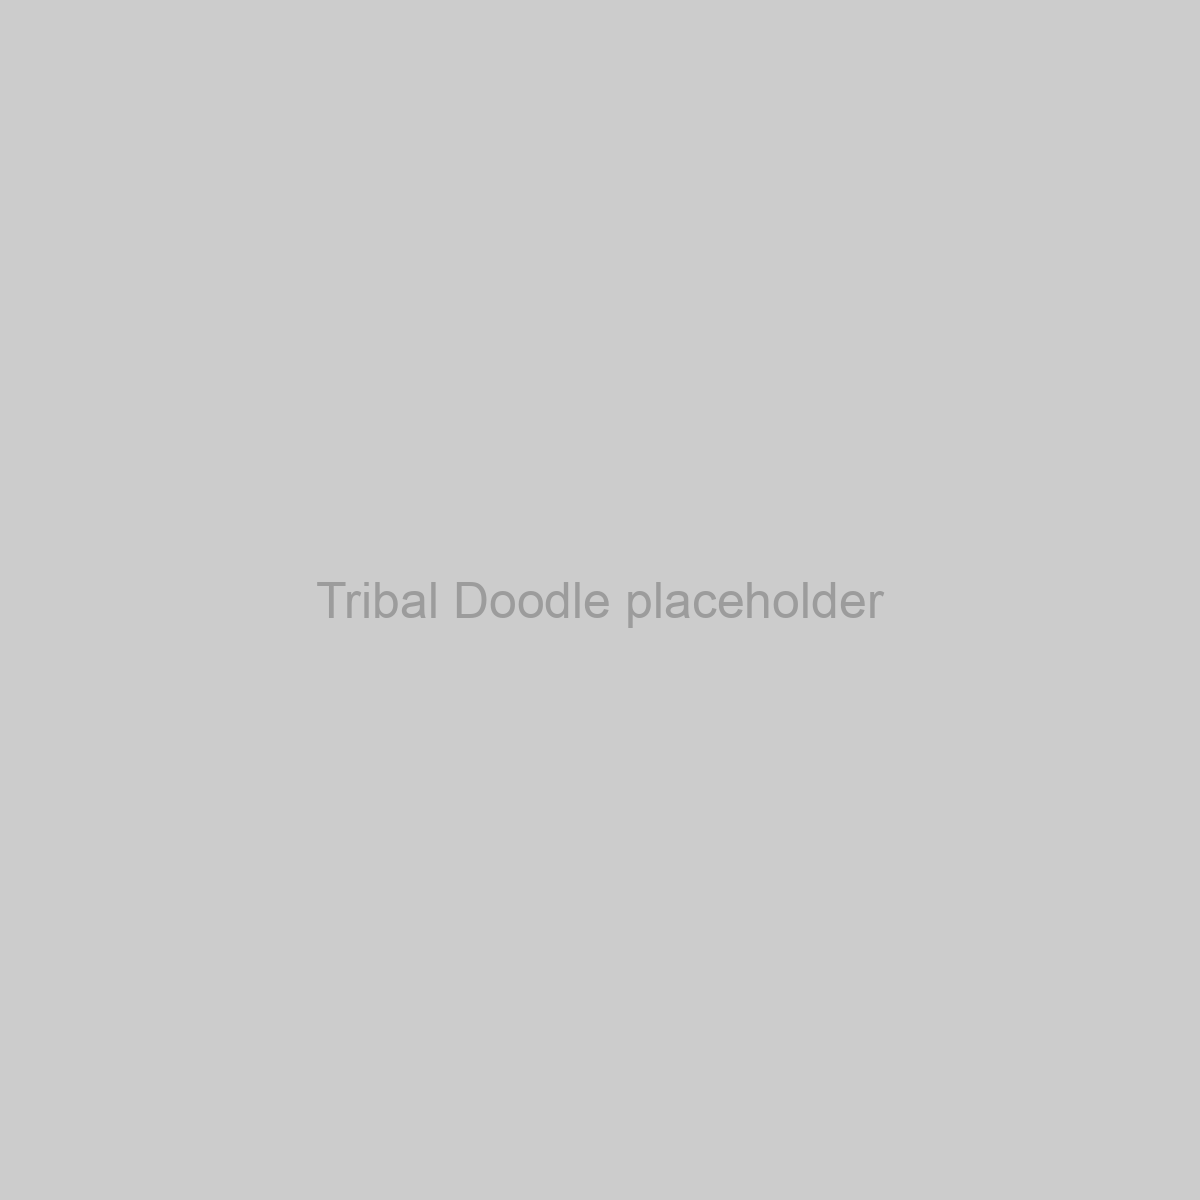 Tribal Doodle Placeholder Image